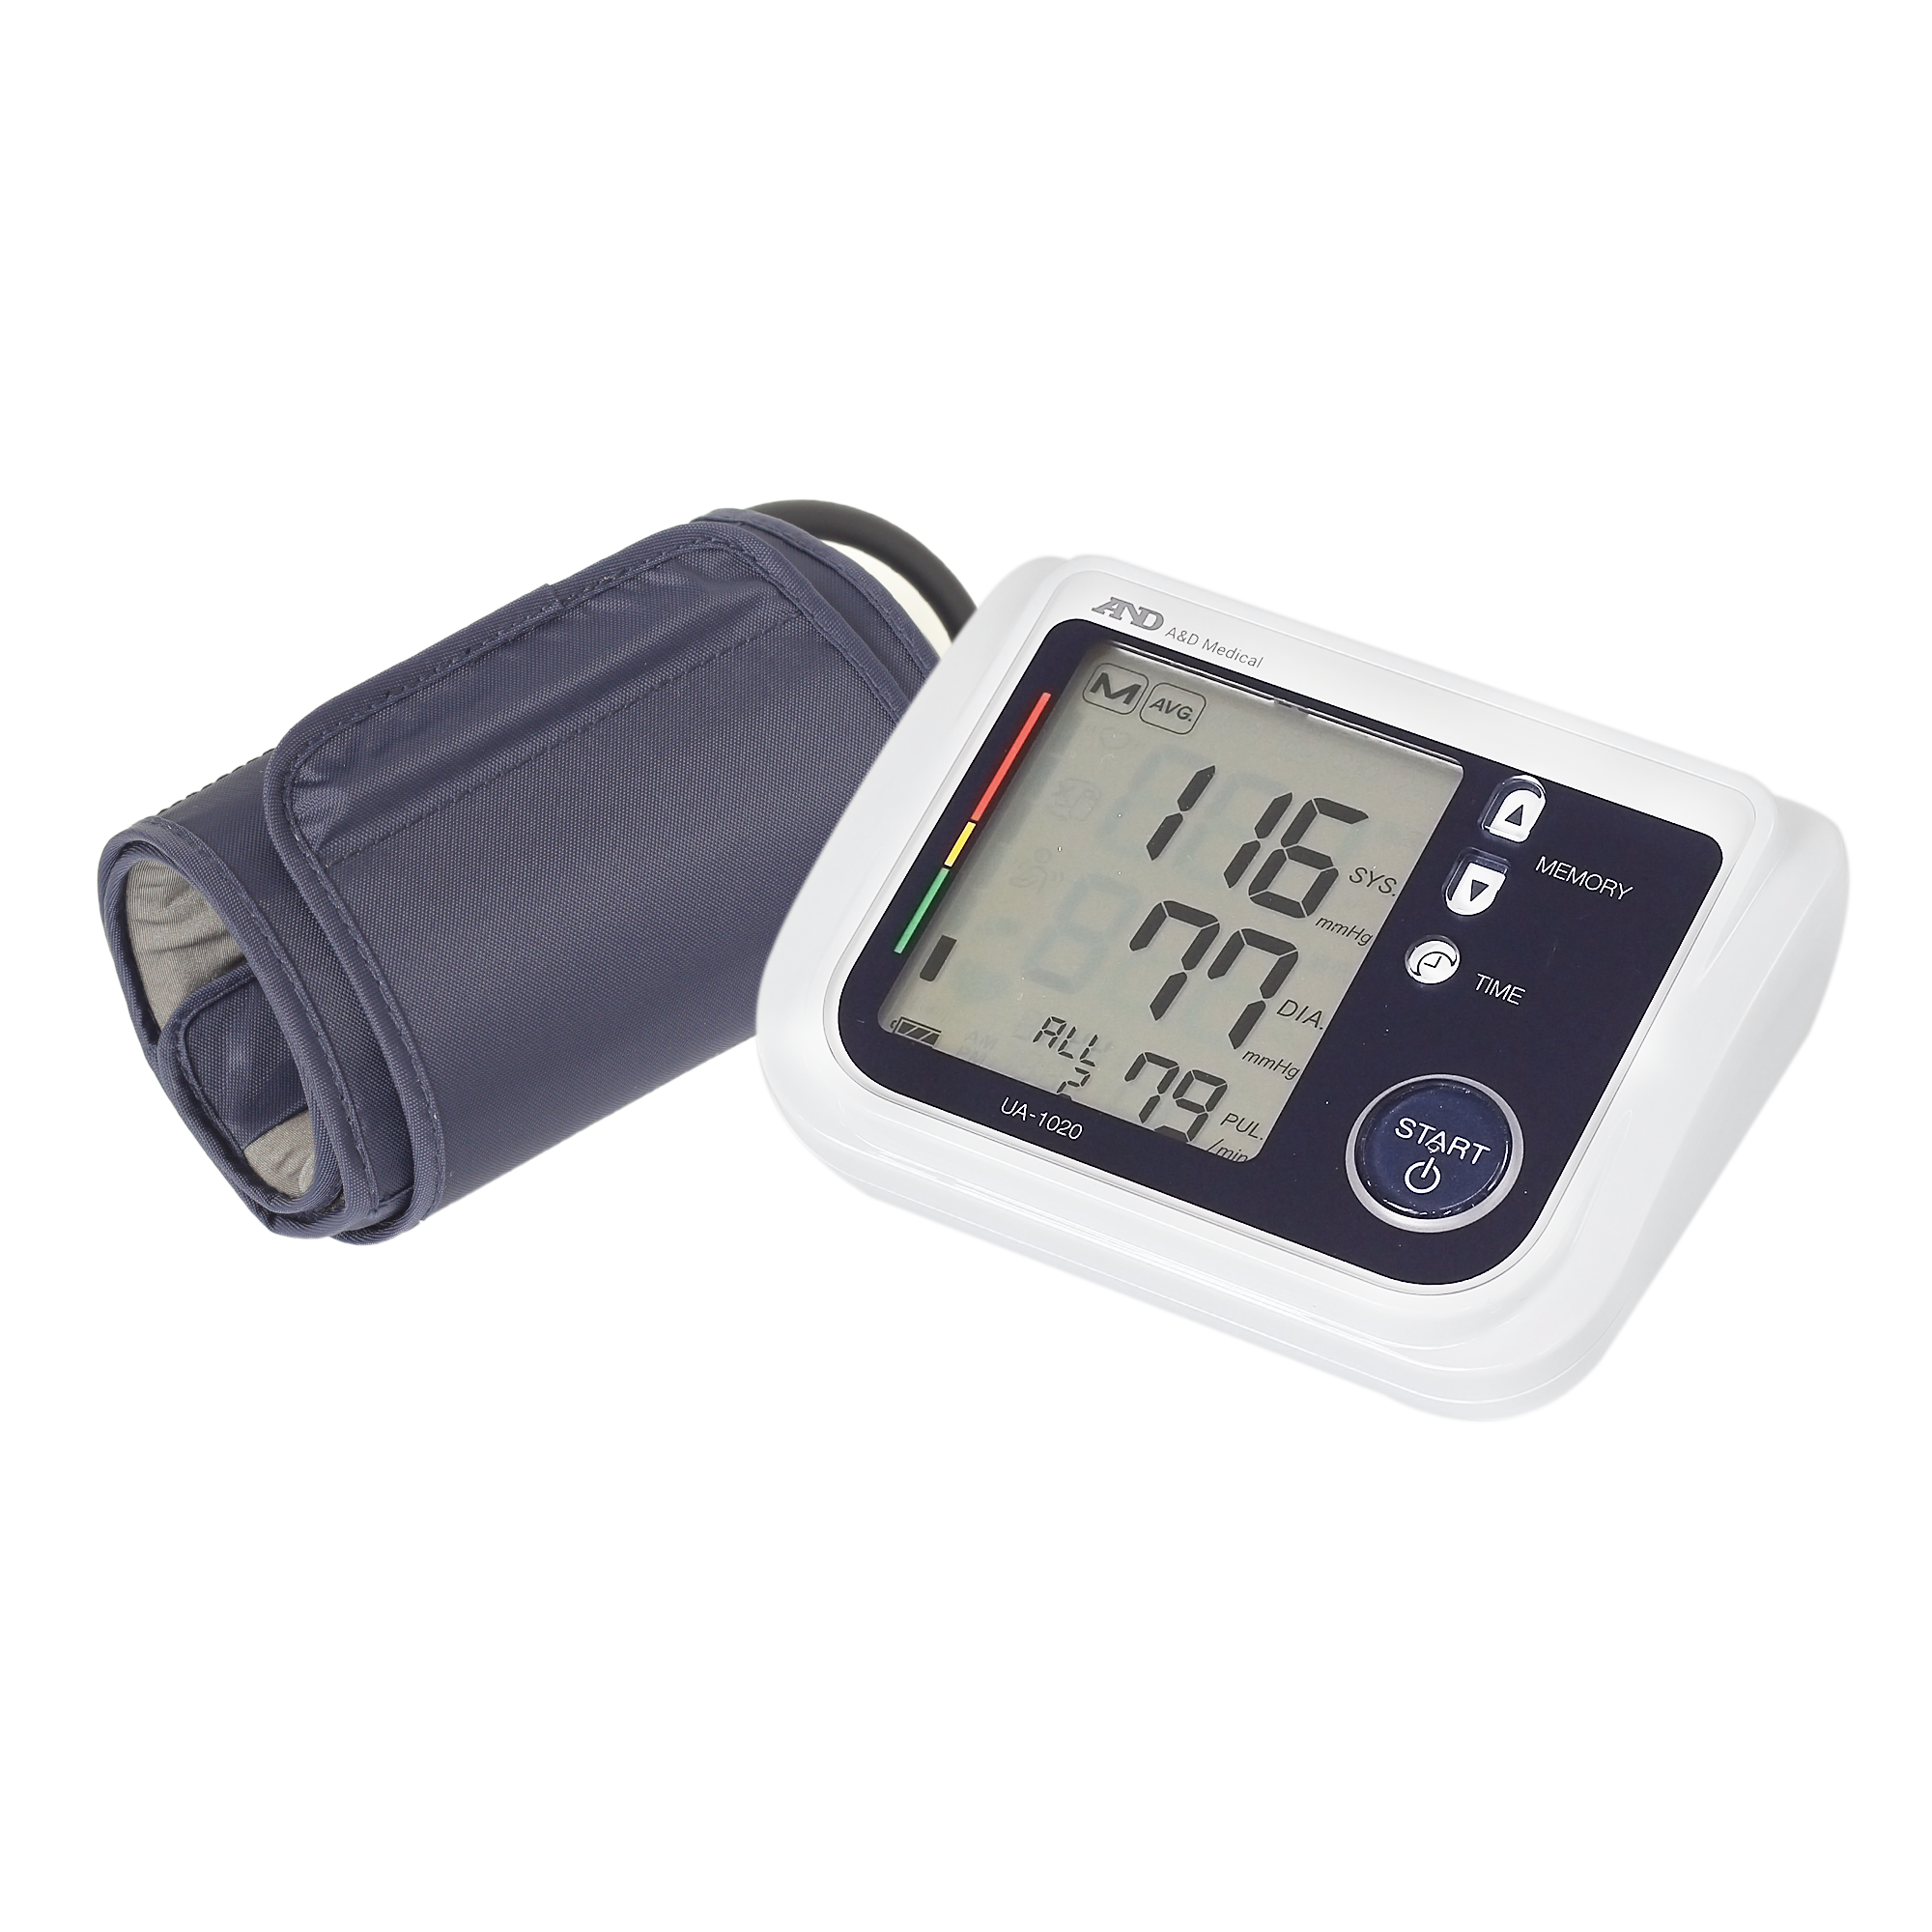 Hình ảnh Máy đo huyết áp bắp tay AND UA-1020